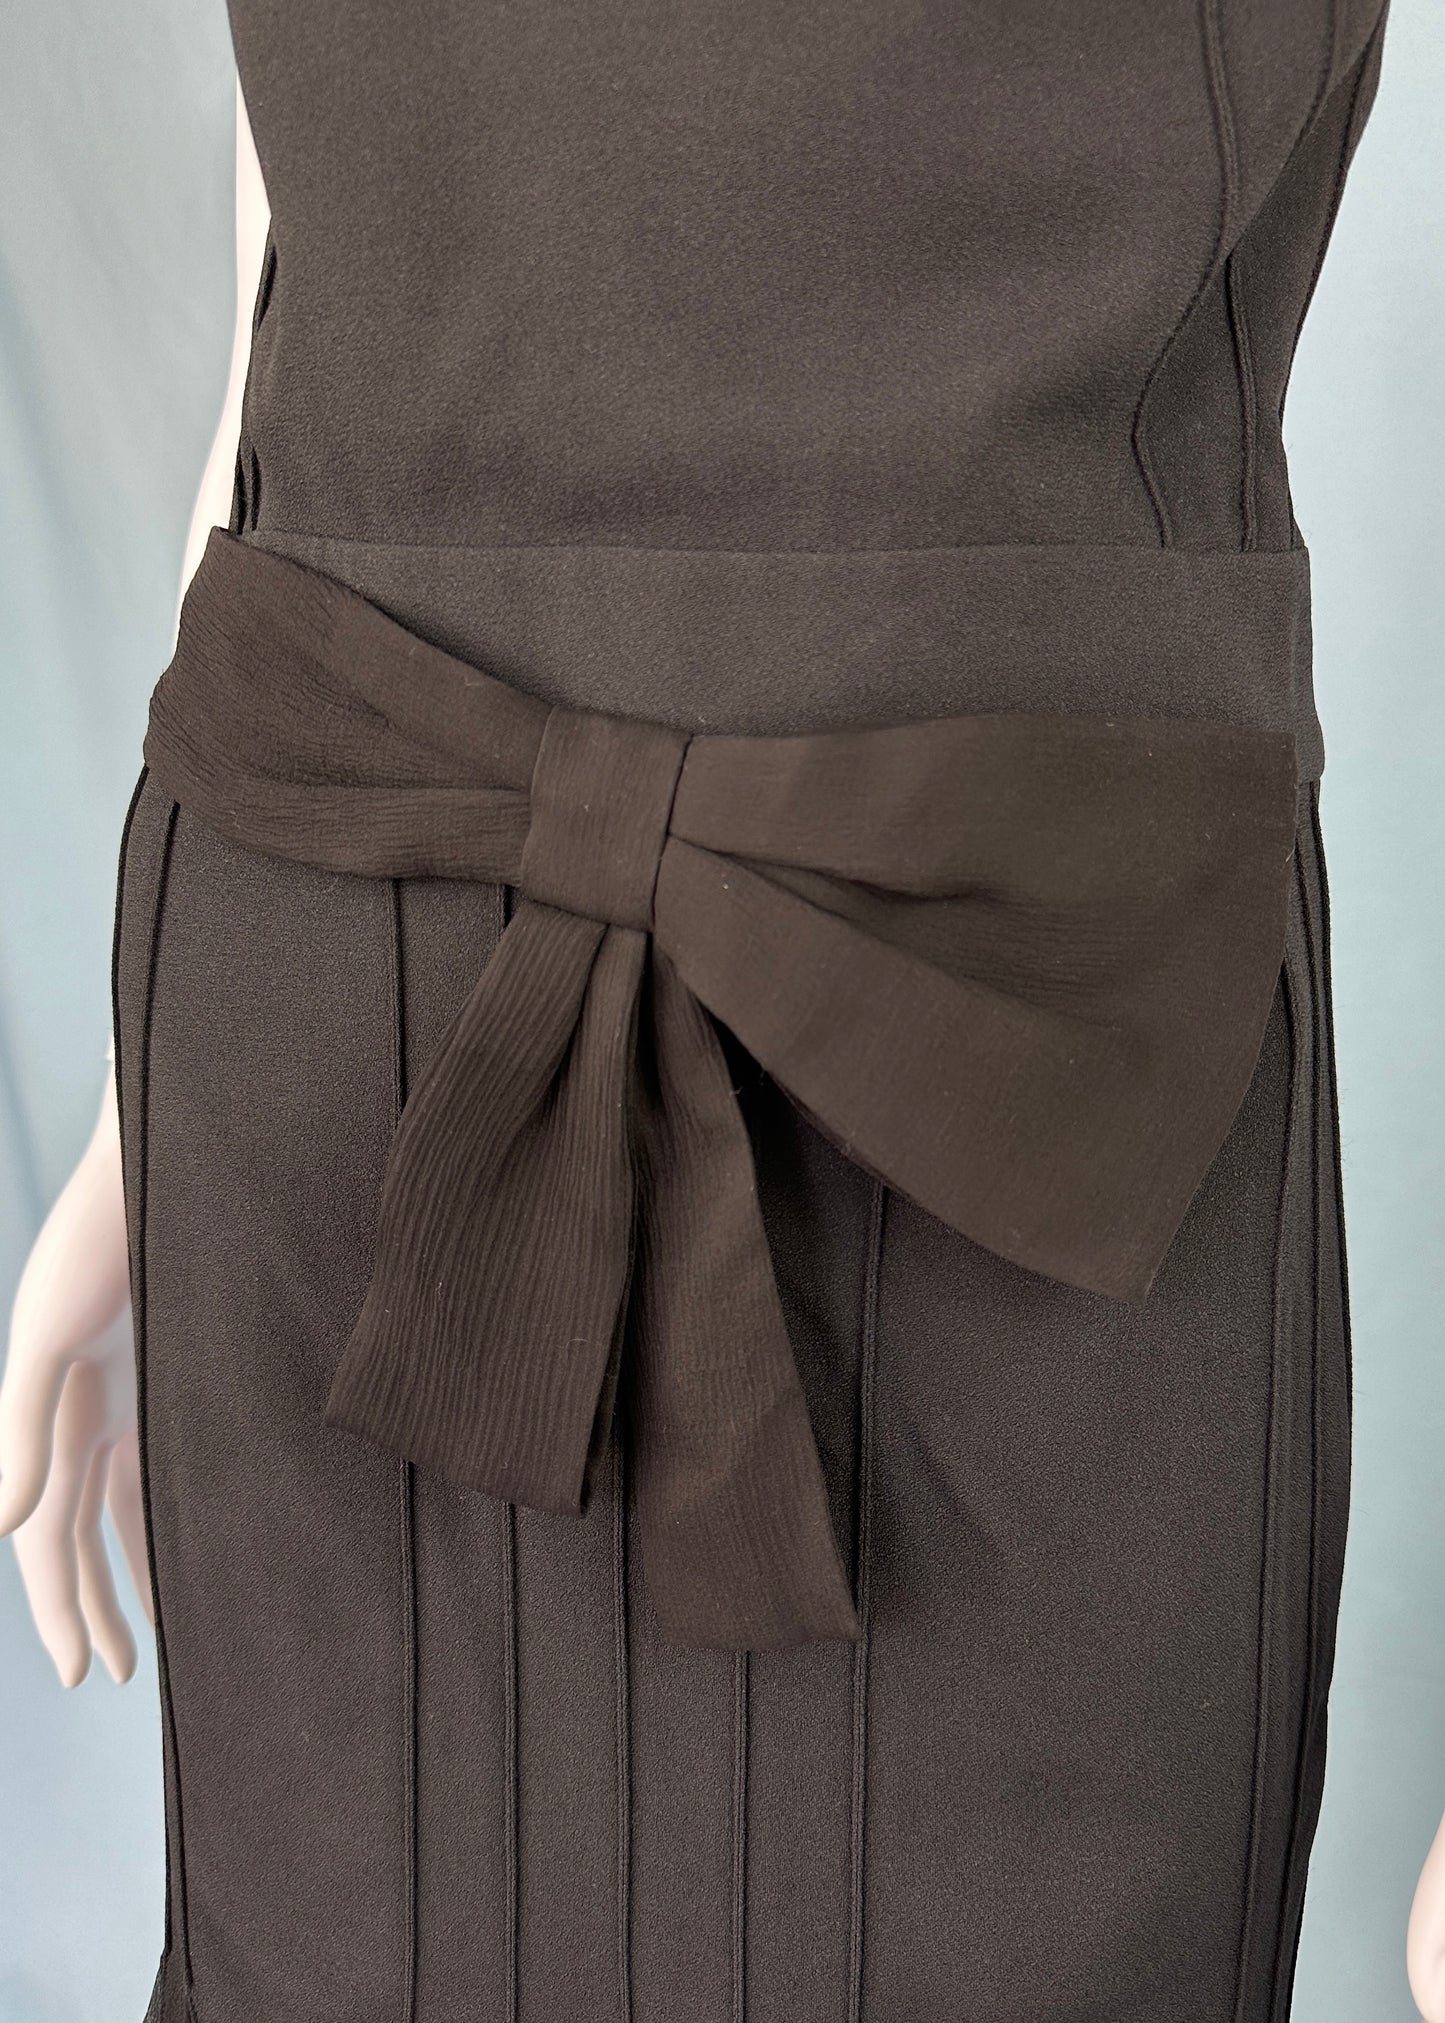 Dior Spring 2008 Black Silk Chiffon Bow Dress